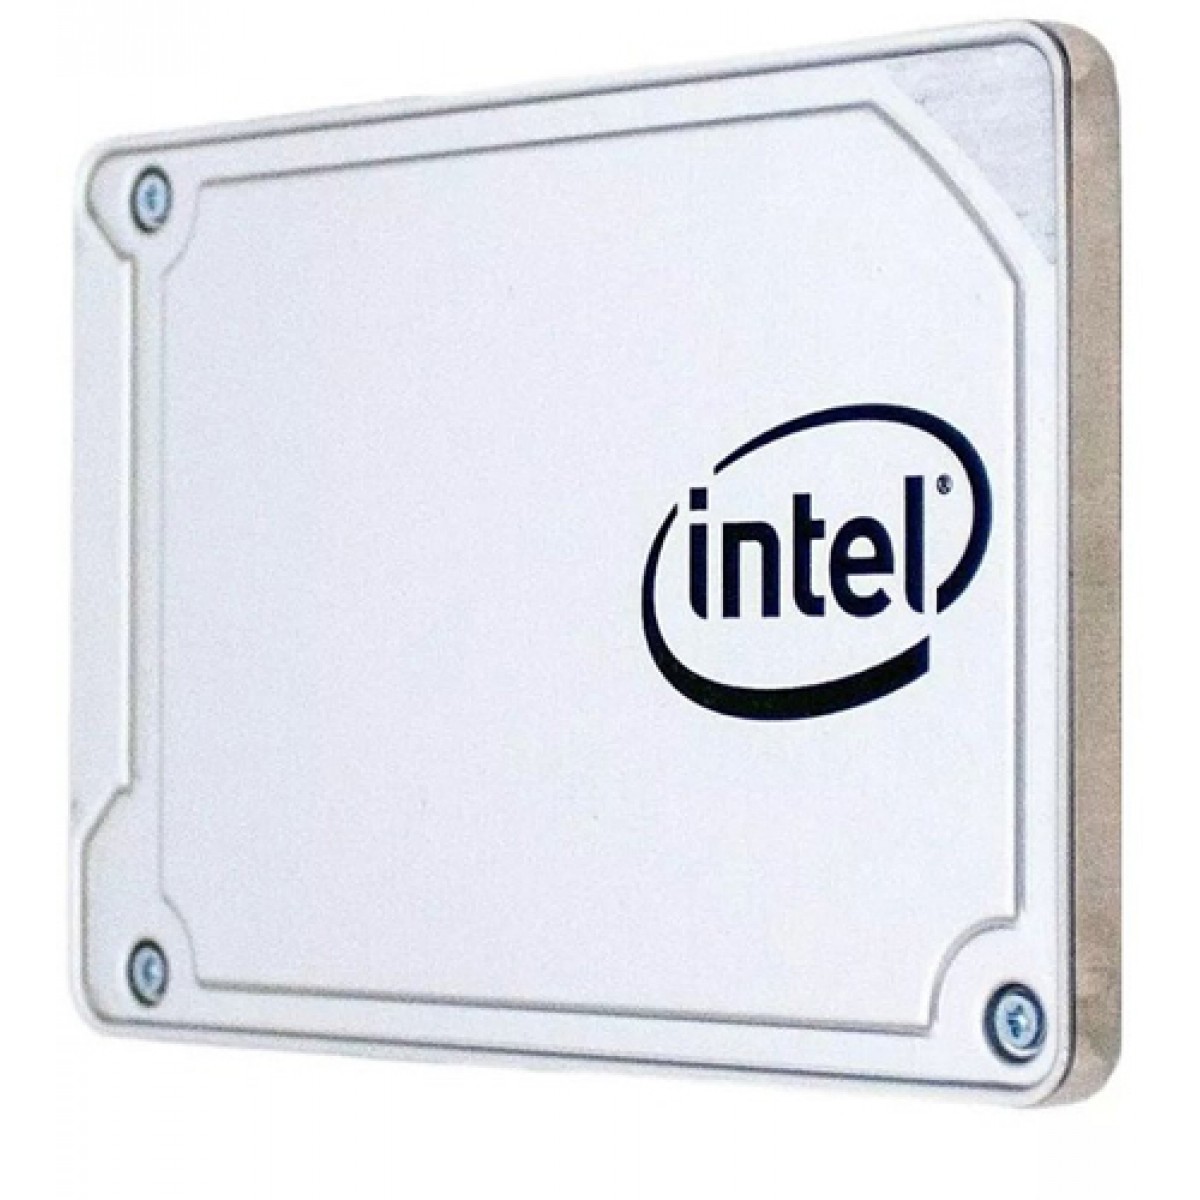 SSD Intel Series 545s 512GB SATA III Leitura 550MB/s e Gravação 500MB/s, SSDSC2KW512G8X1 